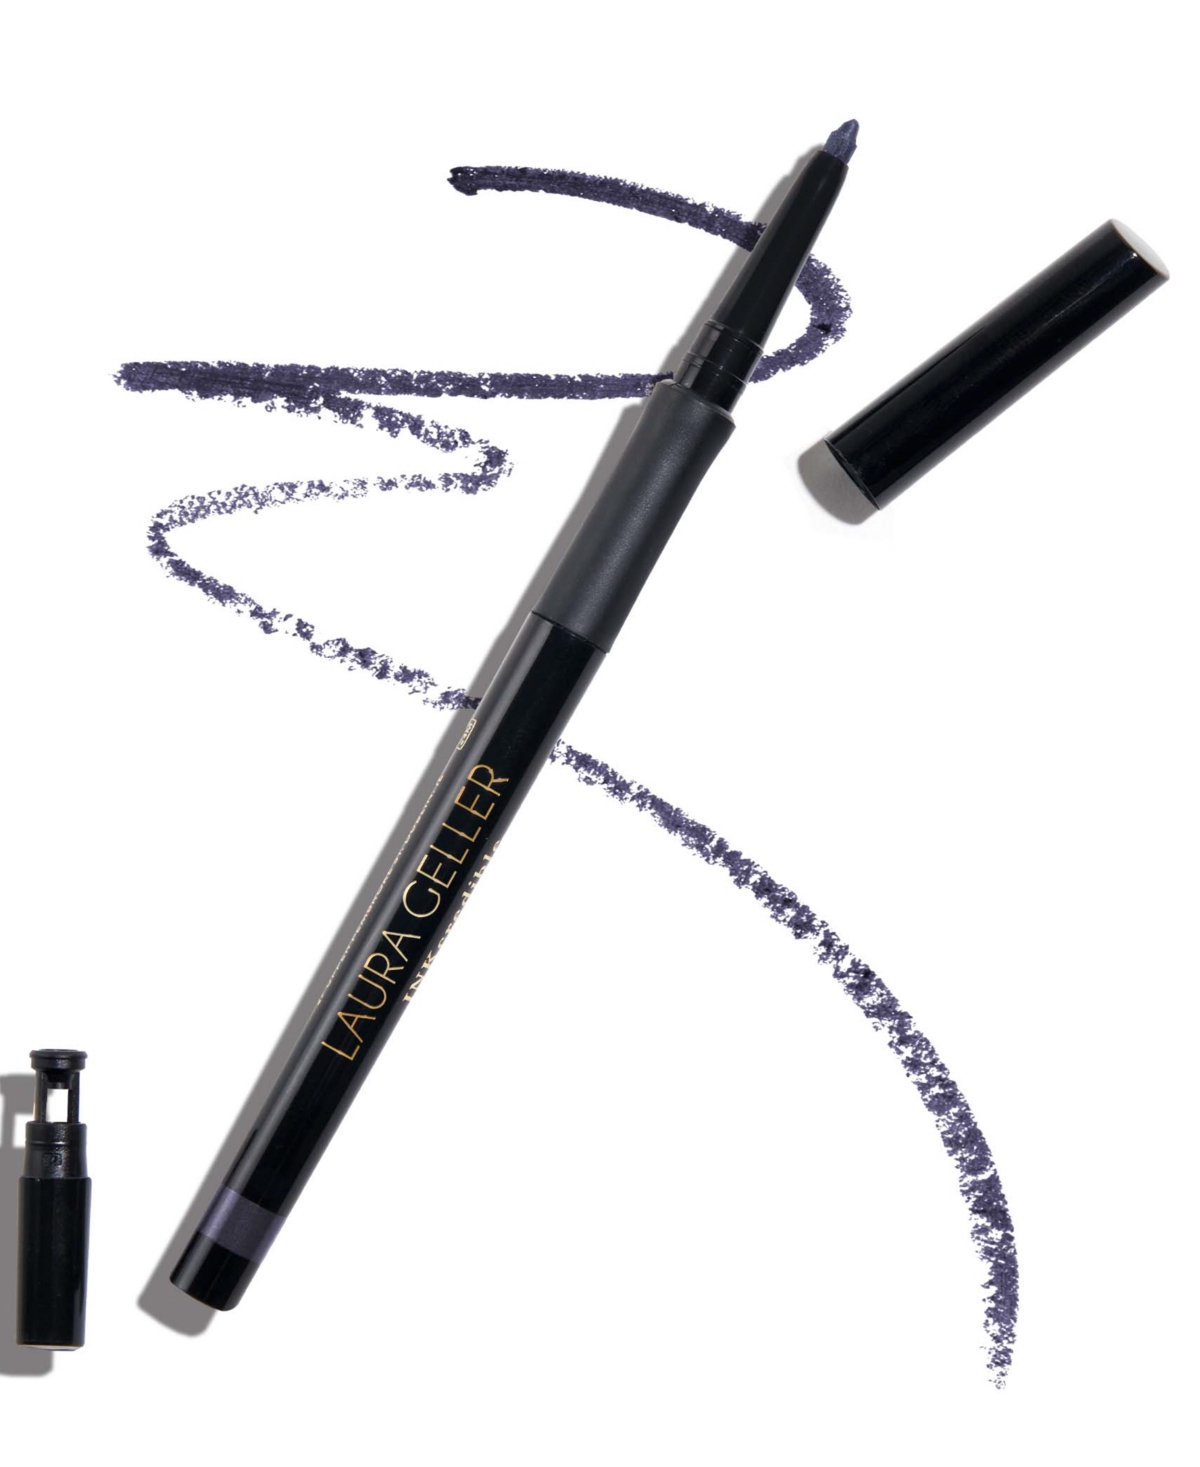 Laura Geller Beauty Inkcredible Waterproof Gel Eyeliner Pencil In Indigo Night